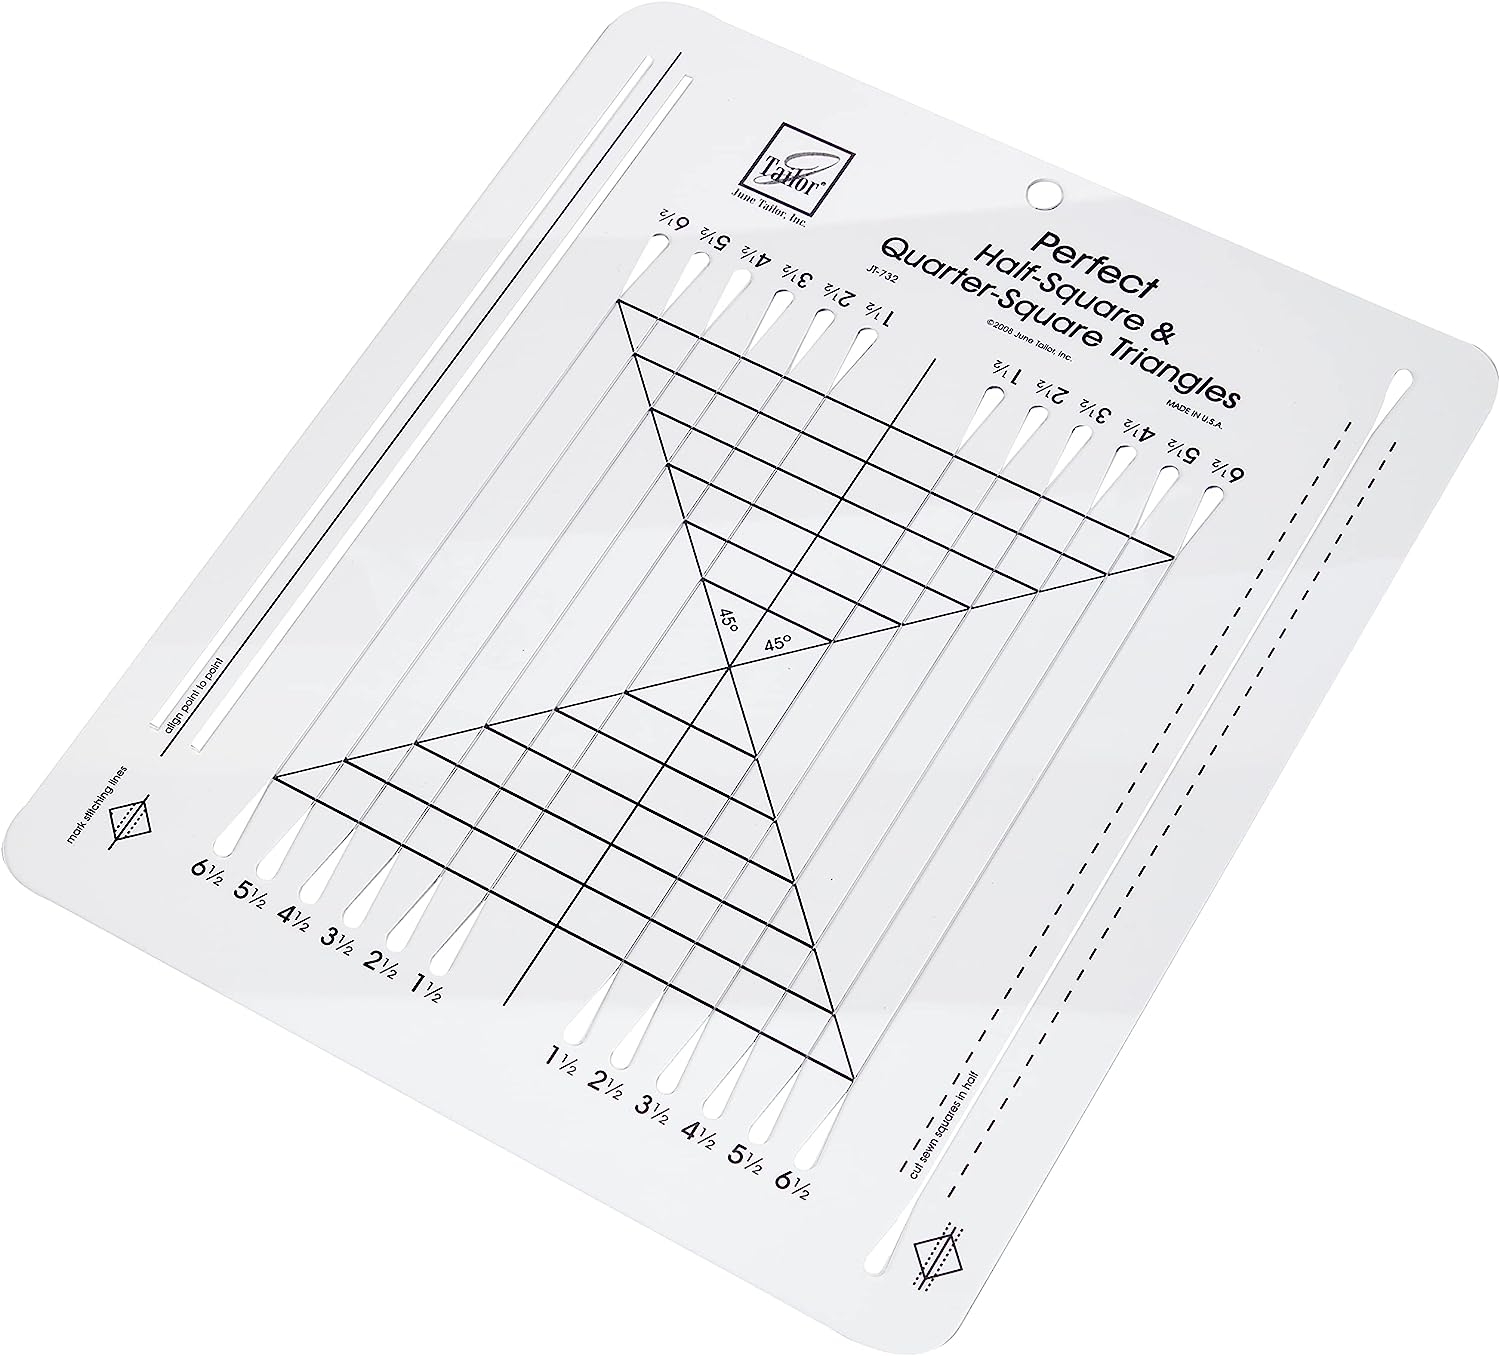 June Tailor 10×12 Perfect Half Square & Quarter Square Triangle Ruler   price checker   price checker Description Gallery